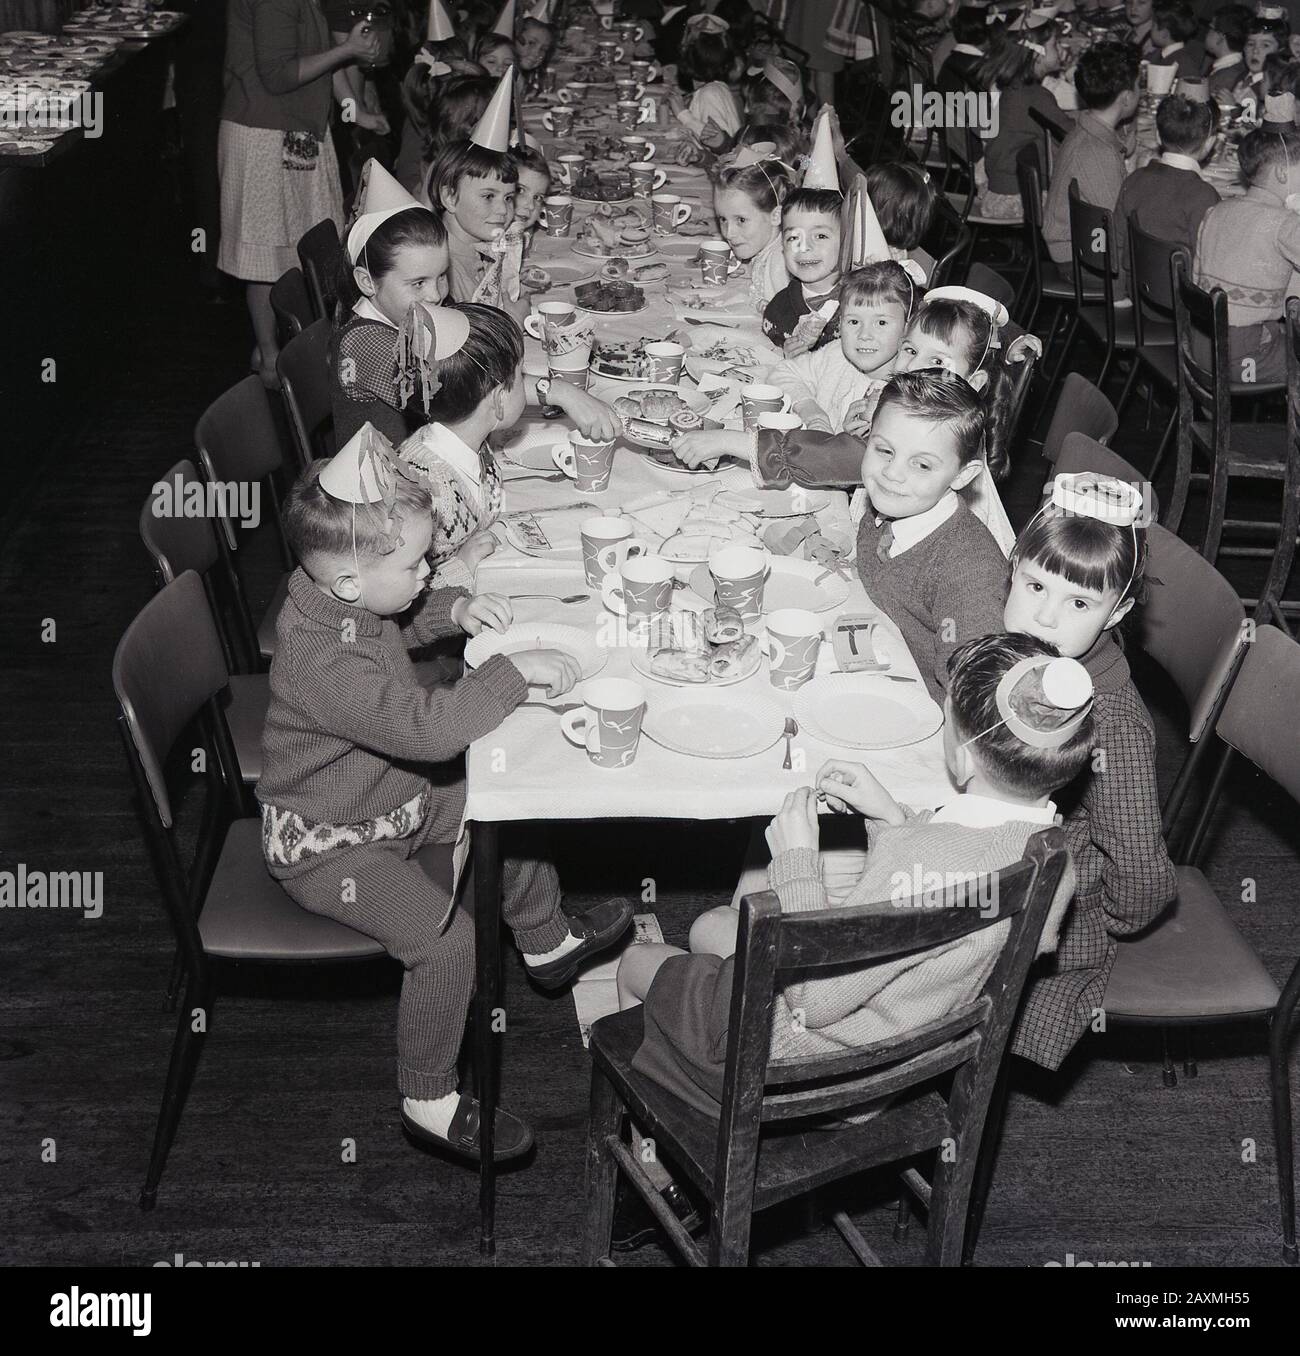 1960er Jahre, historisch, in einem Speisesaal, kleine Schulkinder in Partyhüten, die gemeinsam bei einem weihnachtsessen Spaß haben, England, Großbritannien Stockfoto